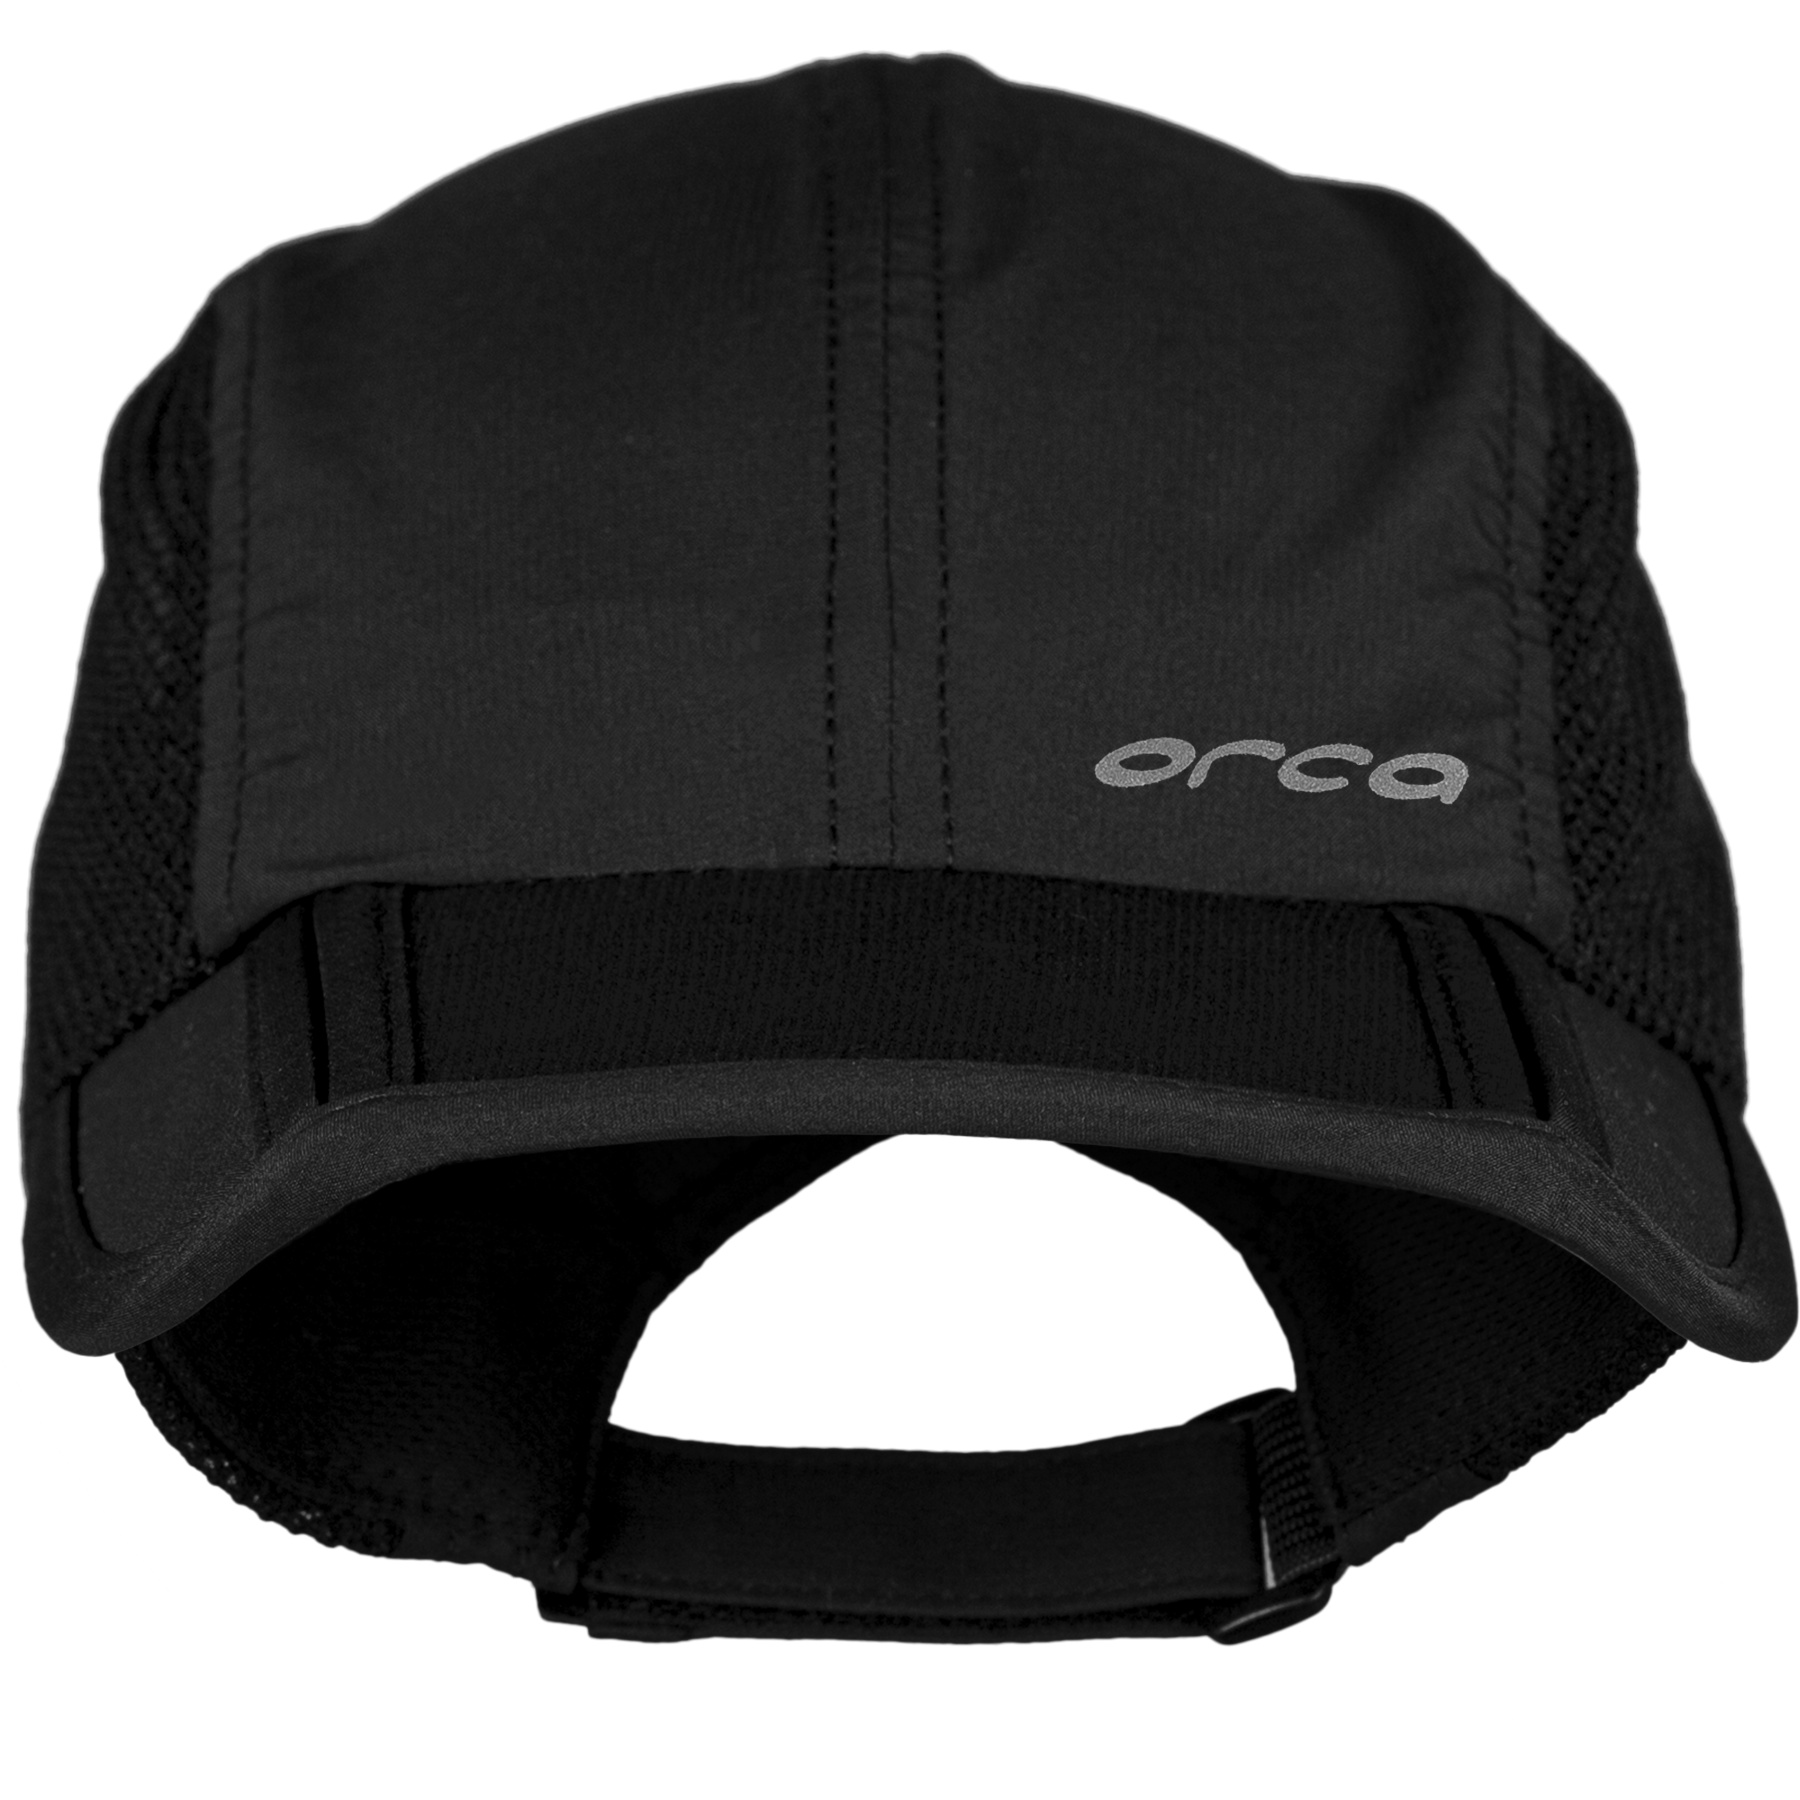 Productfoto van Orca Foldable Cap - black MA17